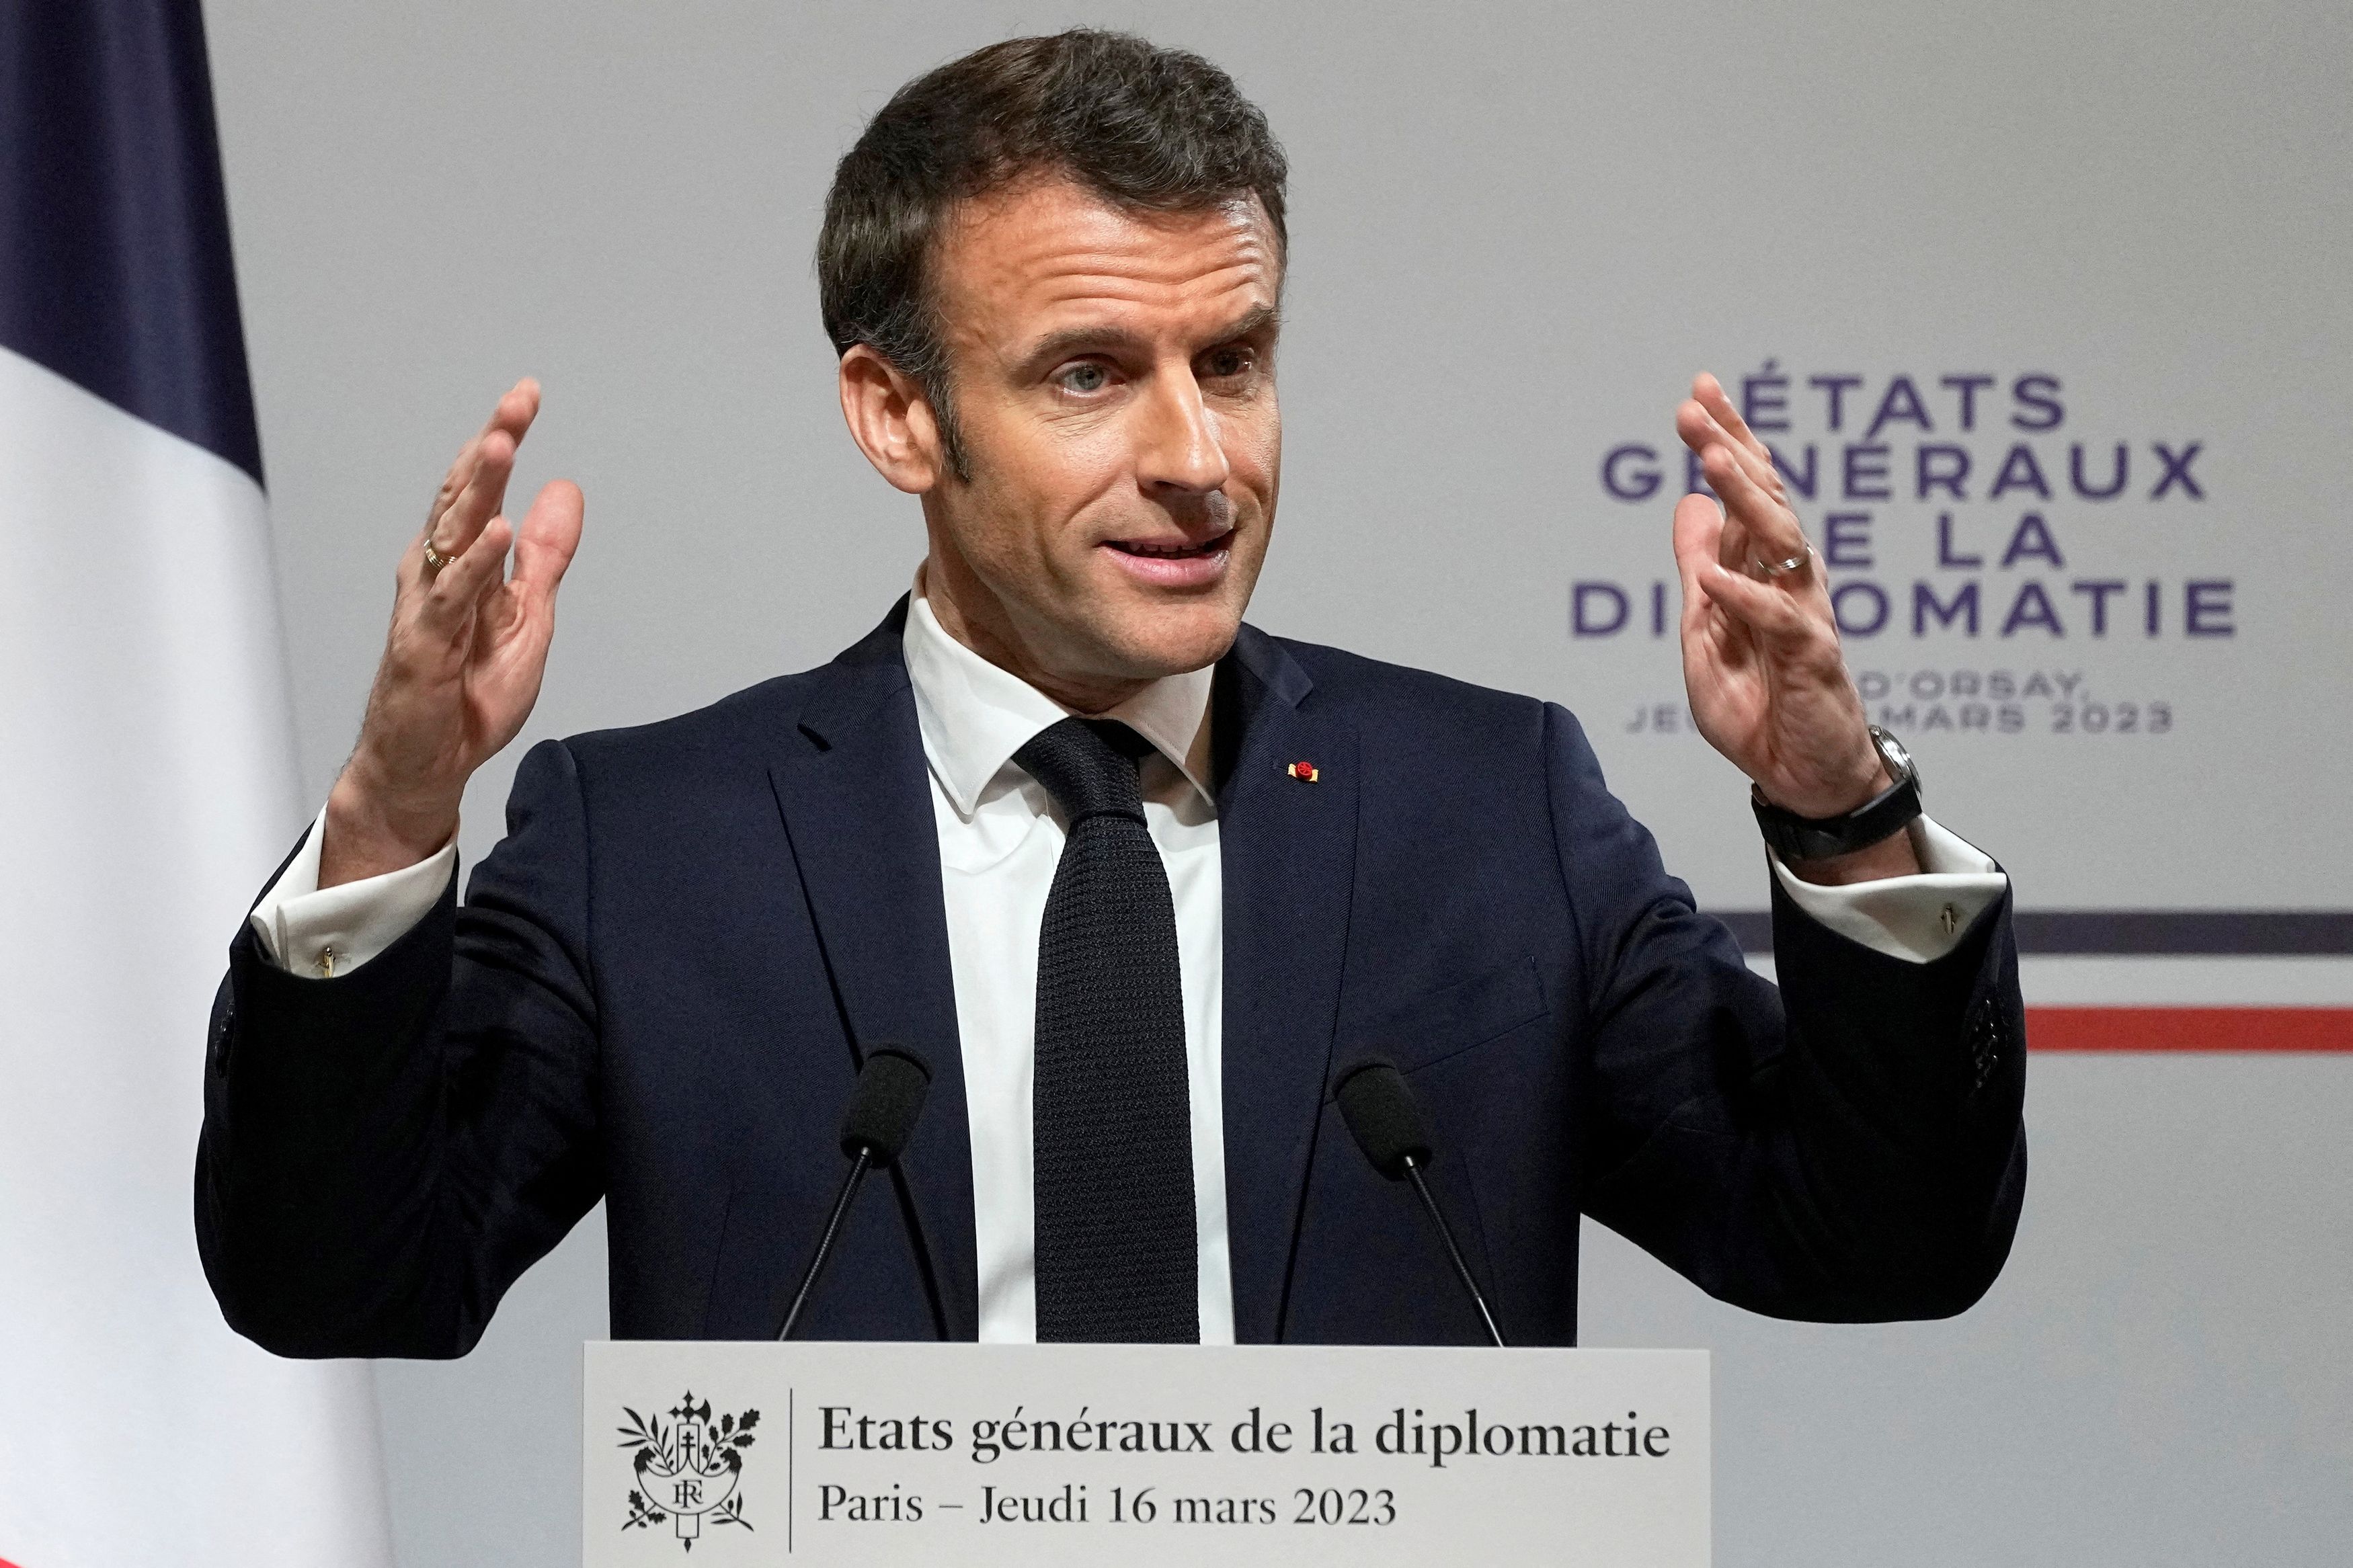 Marginal survival of Macron – dismissal requests rejected